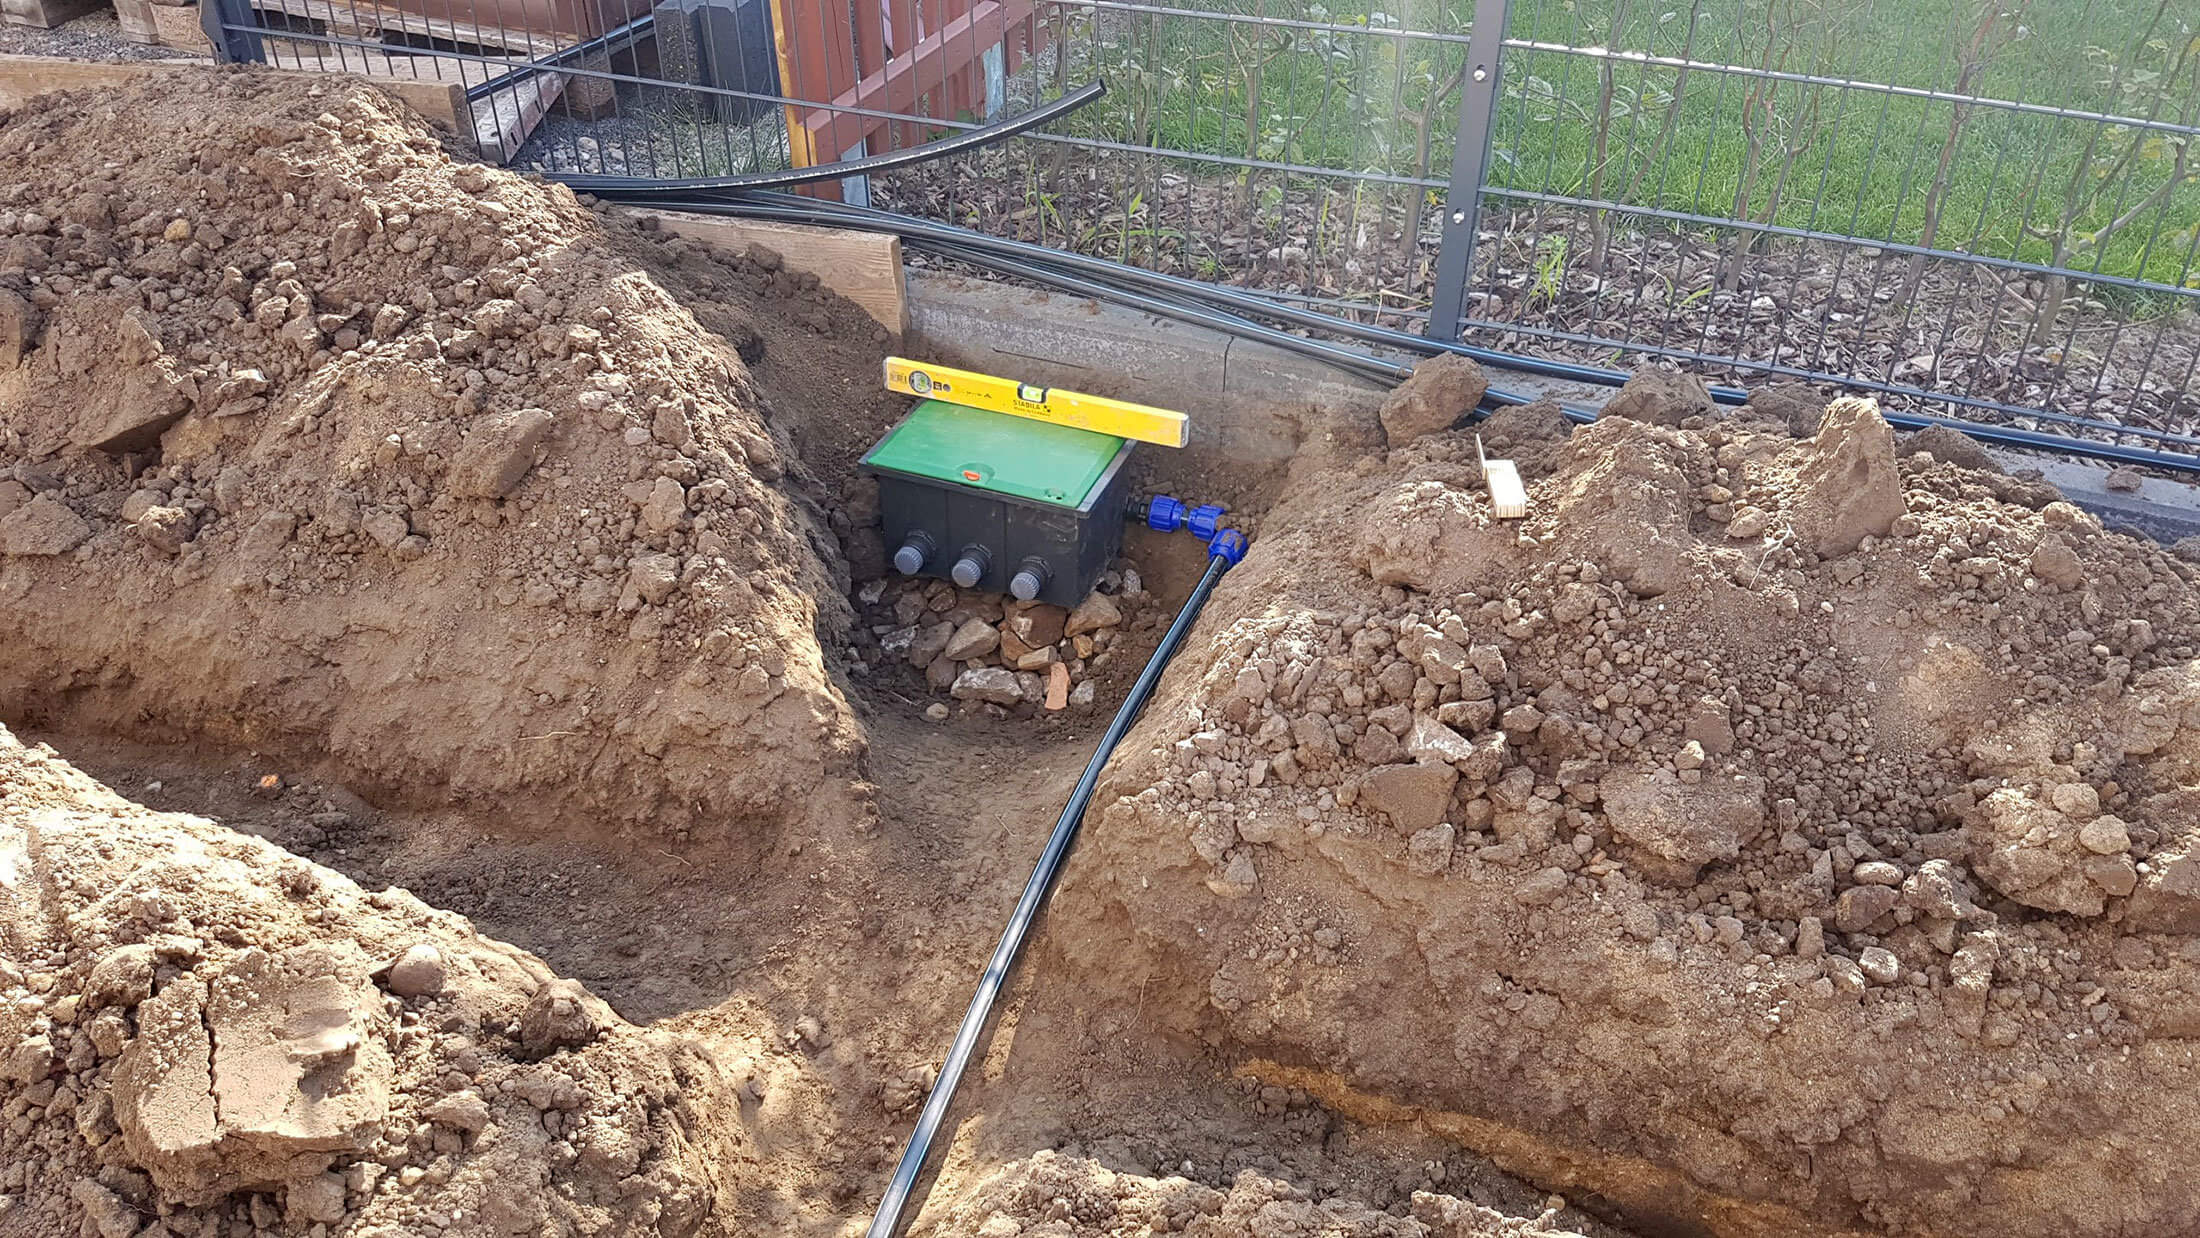 Gartenbewässerung selber bauen: Gräben, Leitungen und Versenkregner